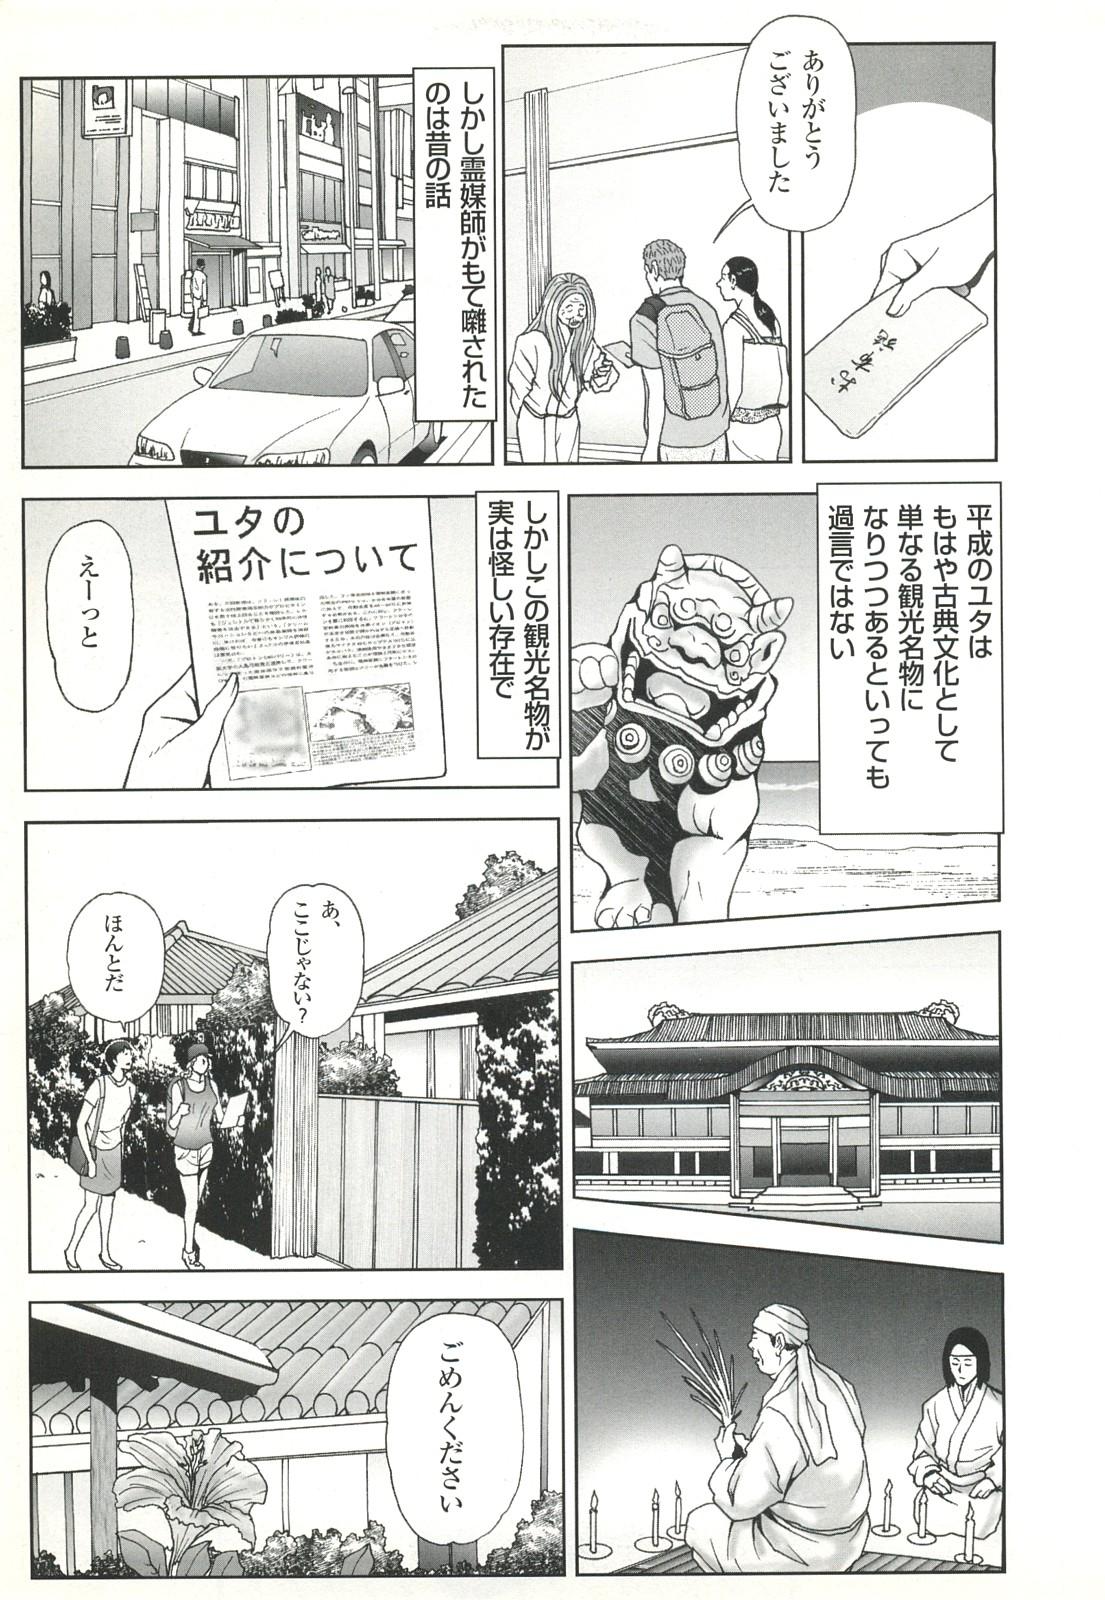 コミック裏モノJAPAN Vol.18 今井のりたつスペシャル号 42